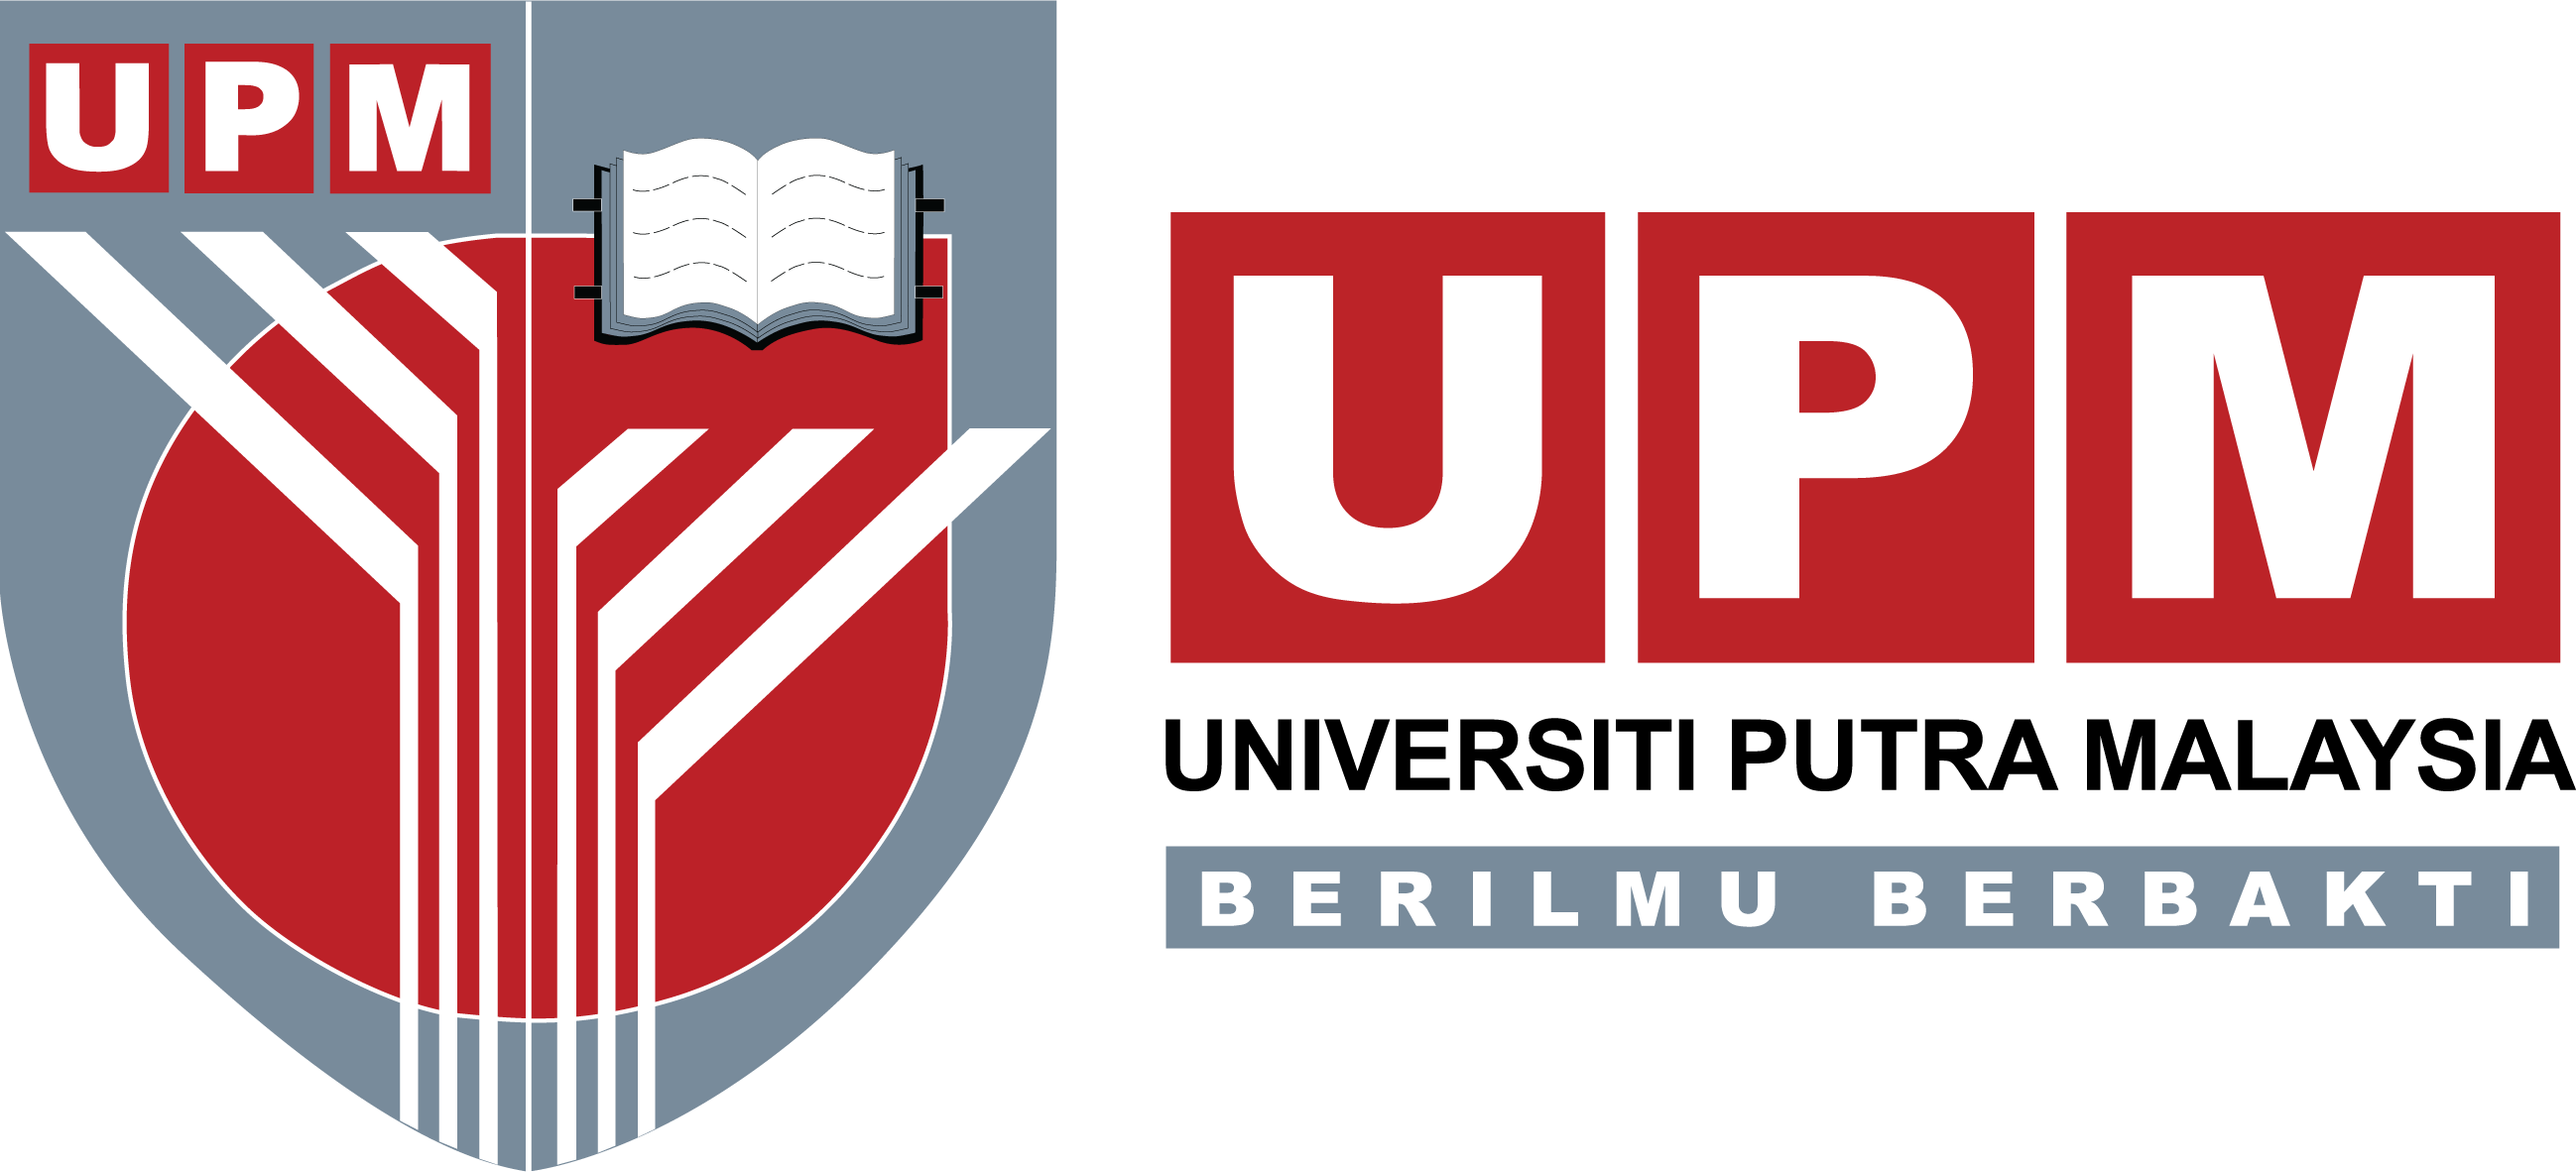 جامعة بوترا ماليزيا | University Putra Malaysia (UPM)